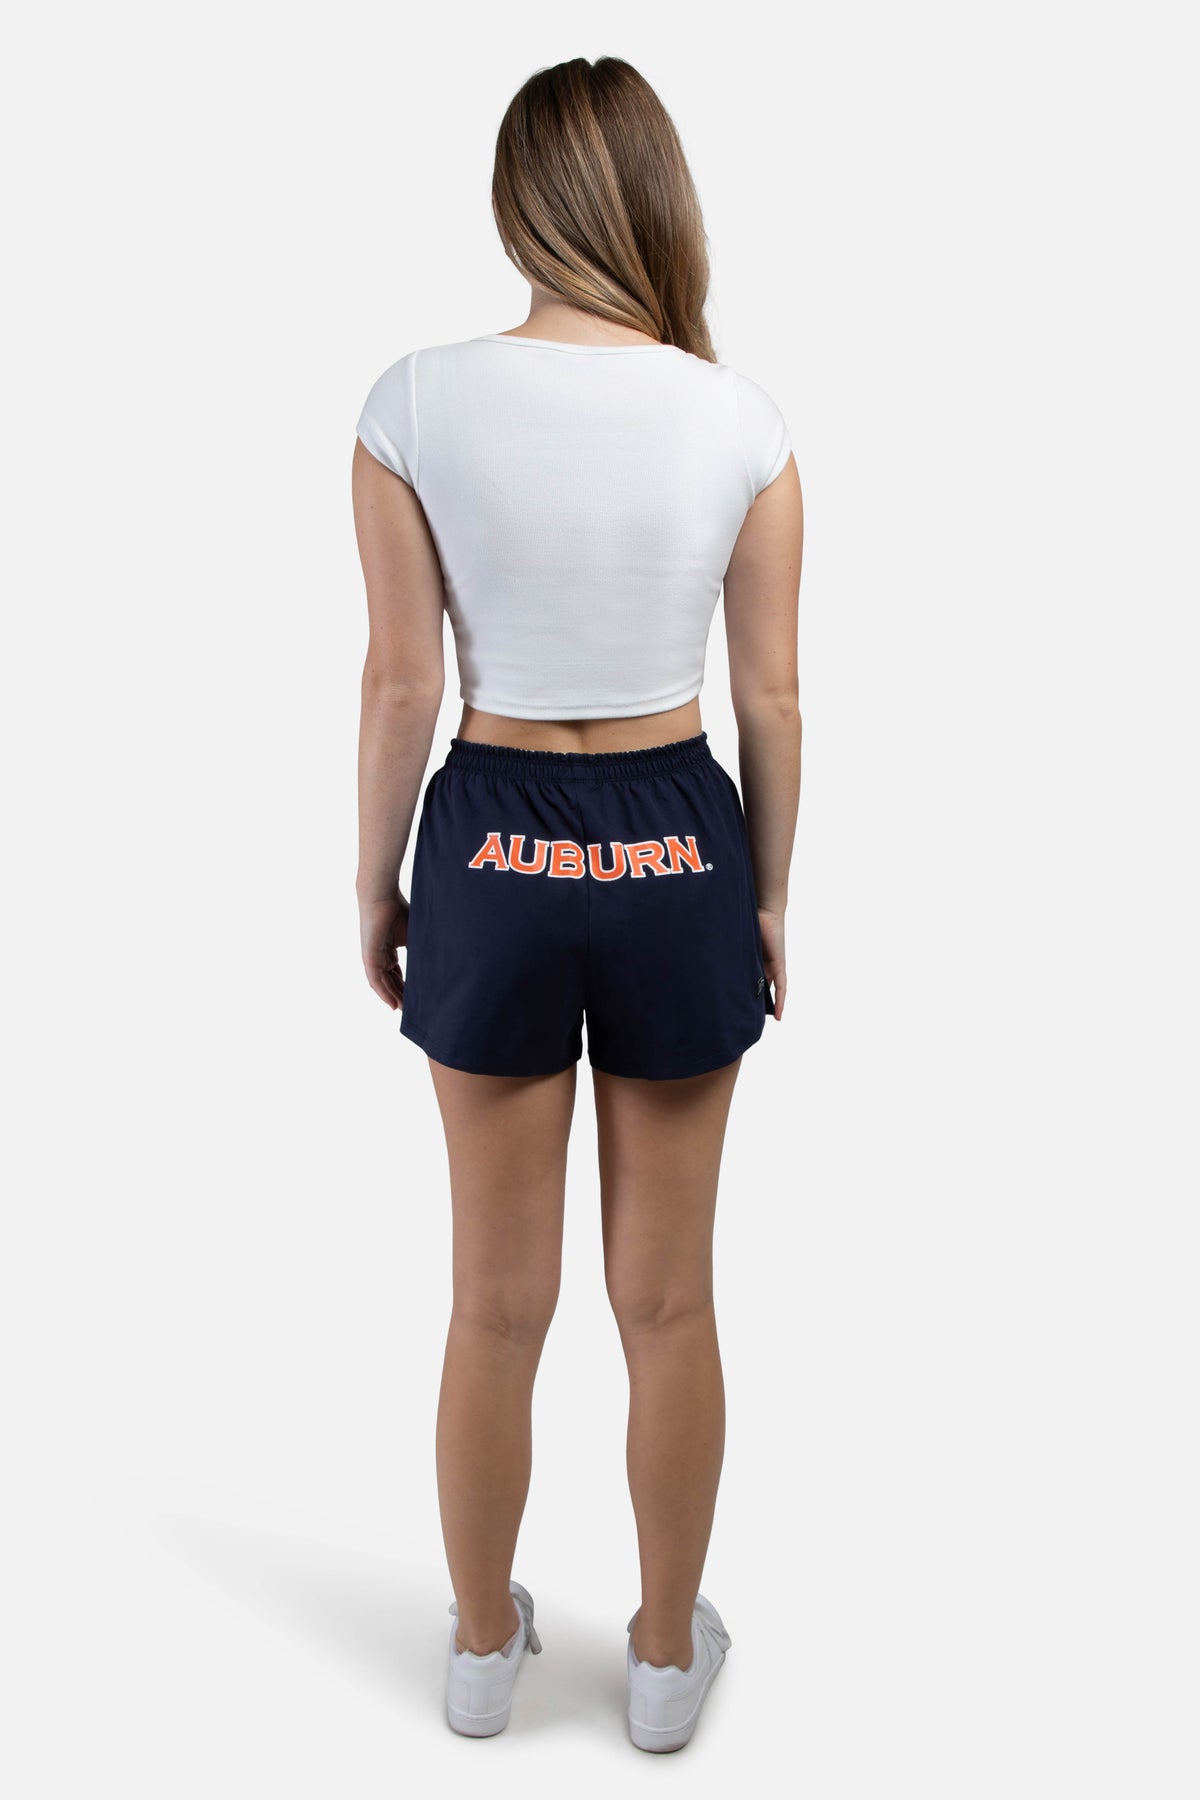 Auburn University P.E. Shorts